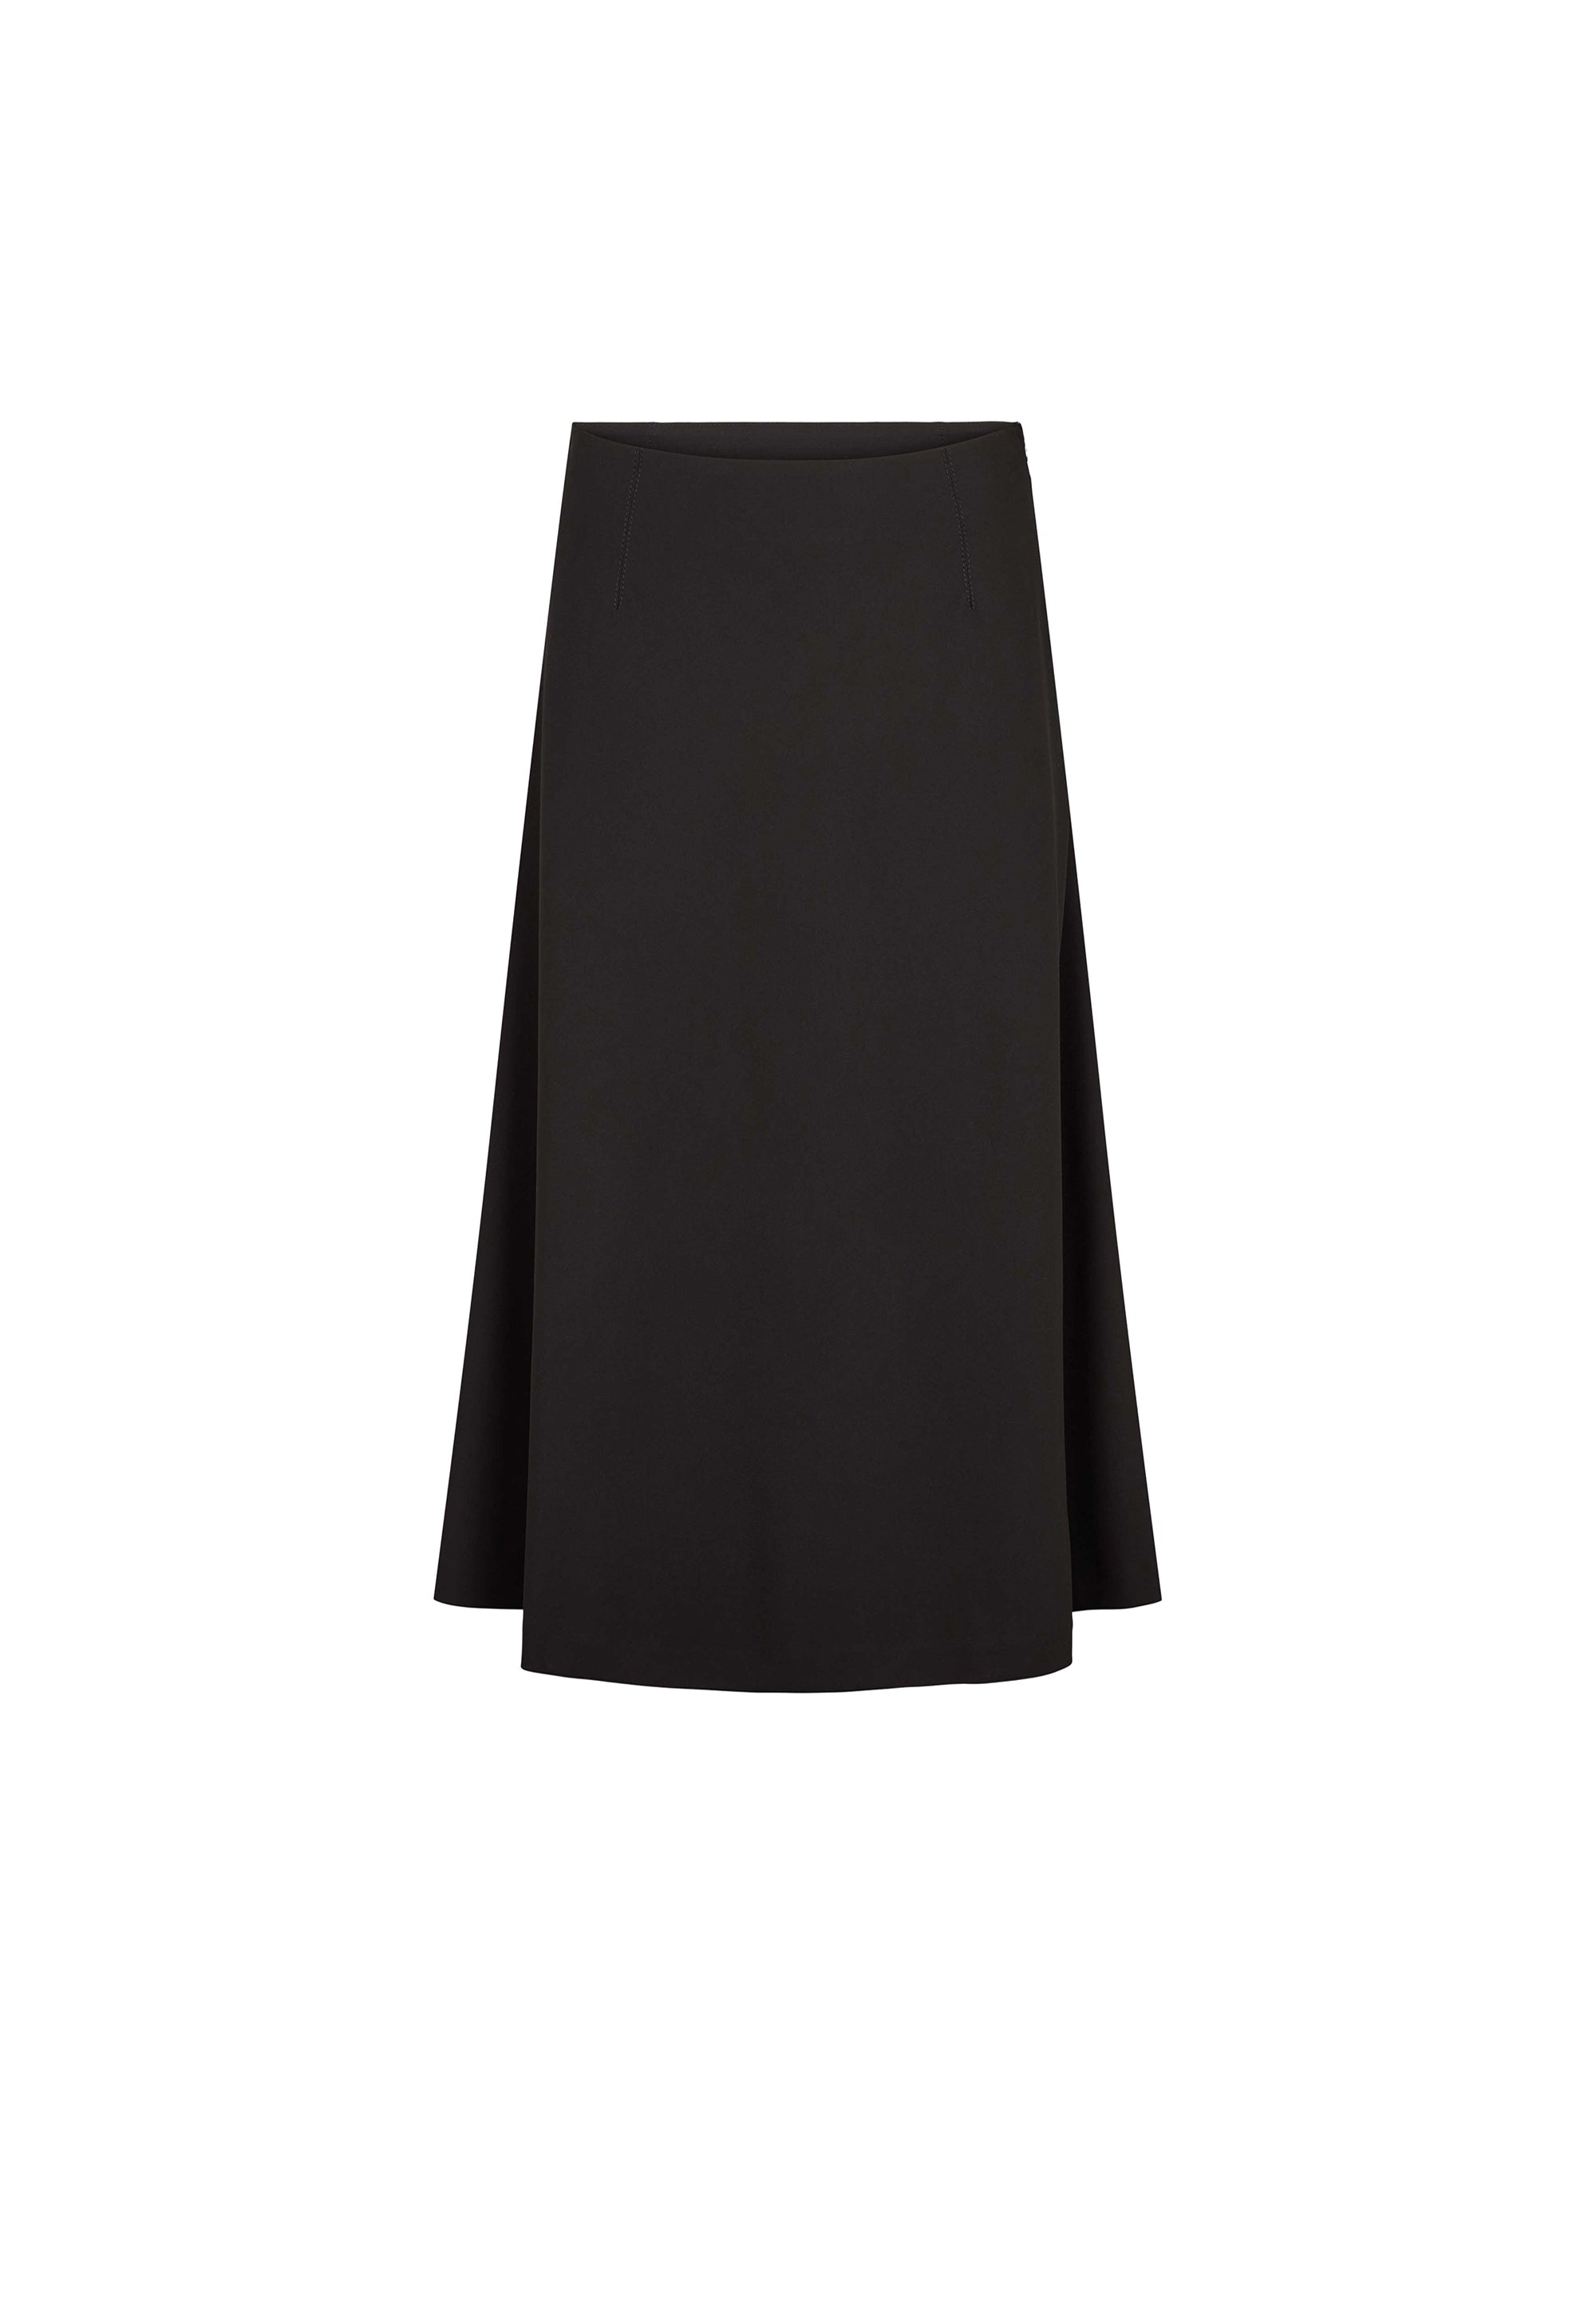 LAURIE Abbi Skirt - 80 cm Skirts 99000 Black